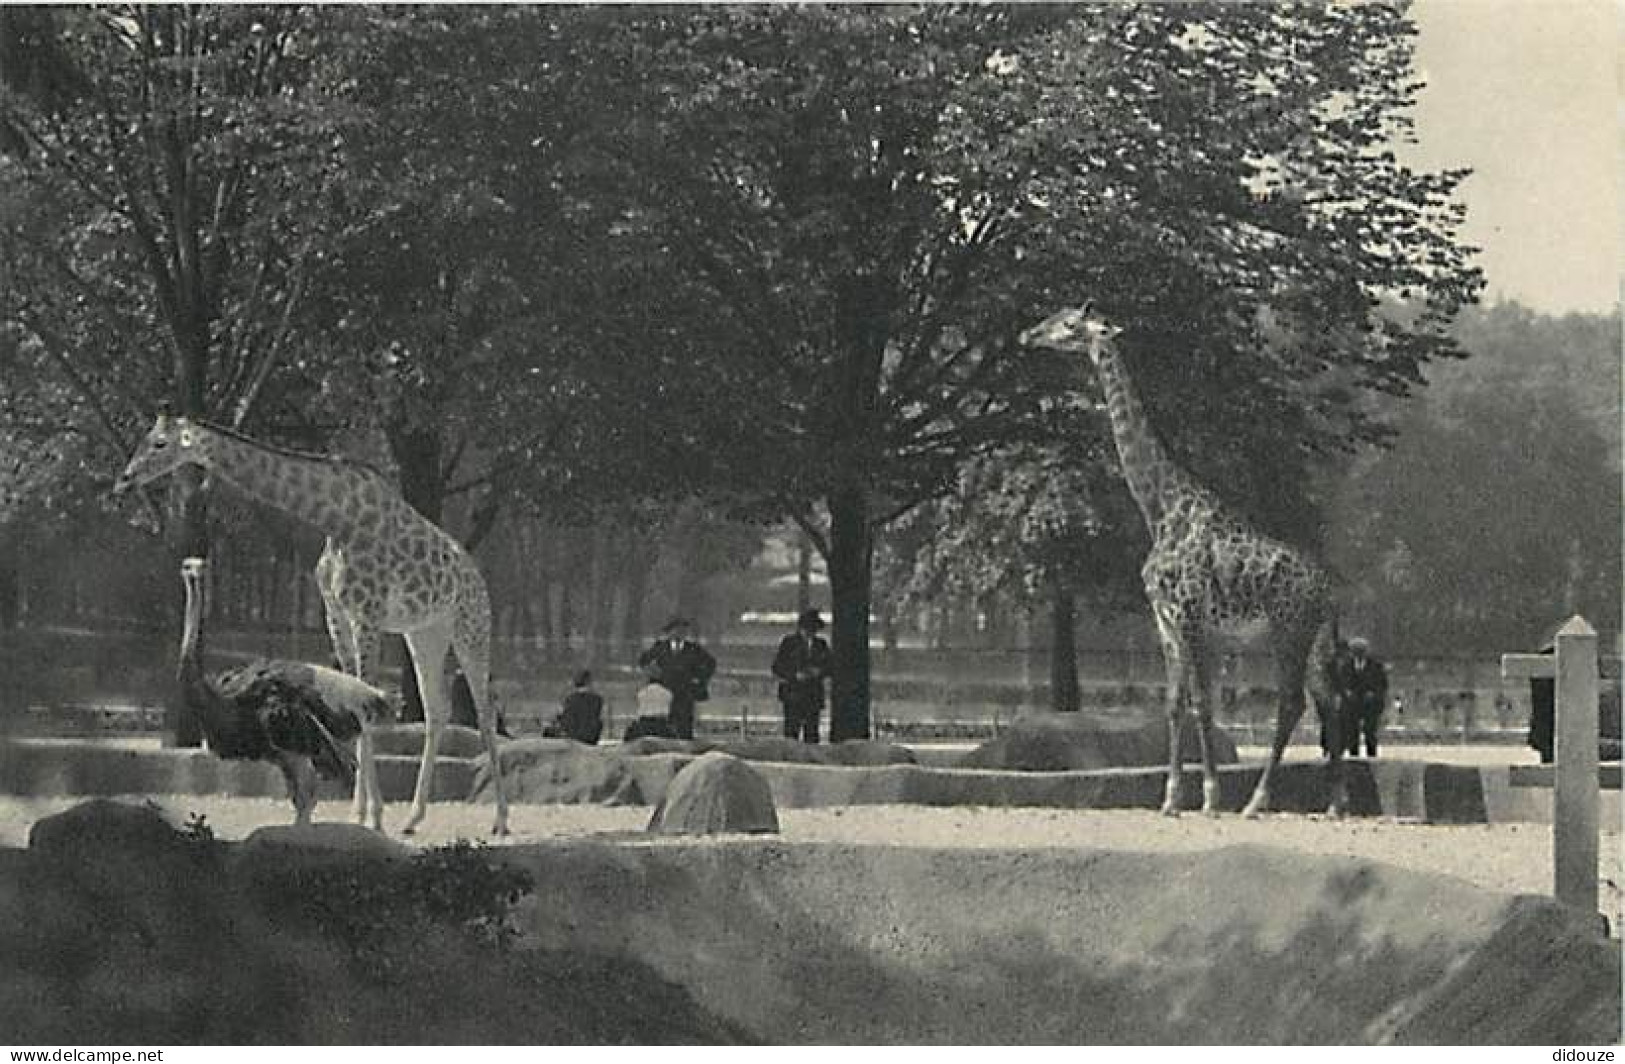 Animaux - Girafes - Parc Zoologique Du Bois De Vincennes - Les Girafes Sur Leur Plateau - Carte Neuve - CPM - Voir Scans - Giraffen